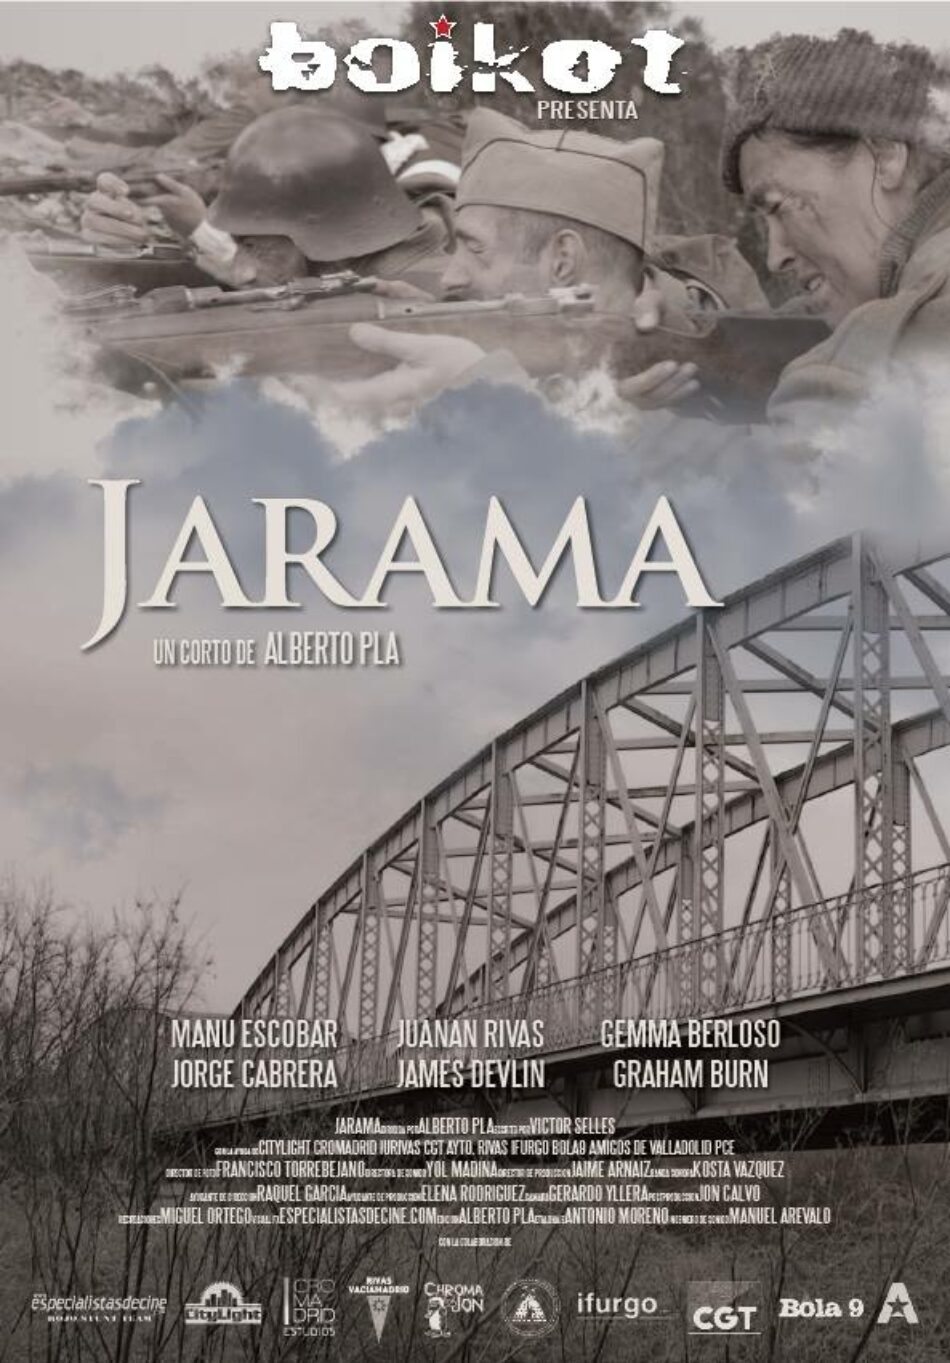 «Jarama», el corto de Alberto Pla sobre el papel de las Brigadas Internacionales en la célebre batalla